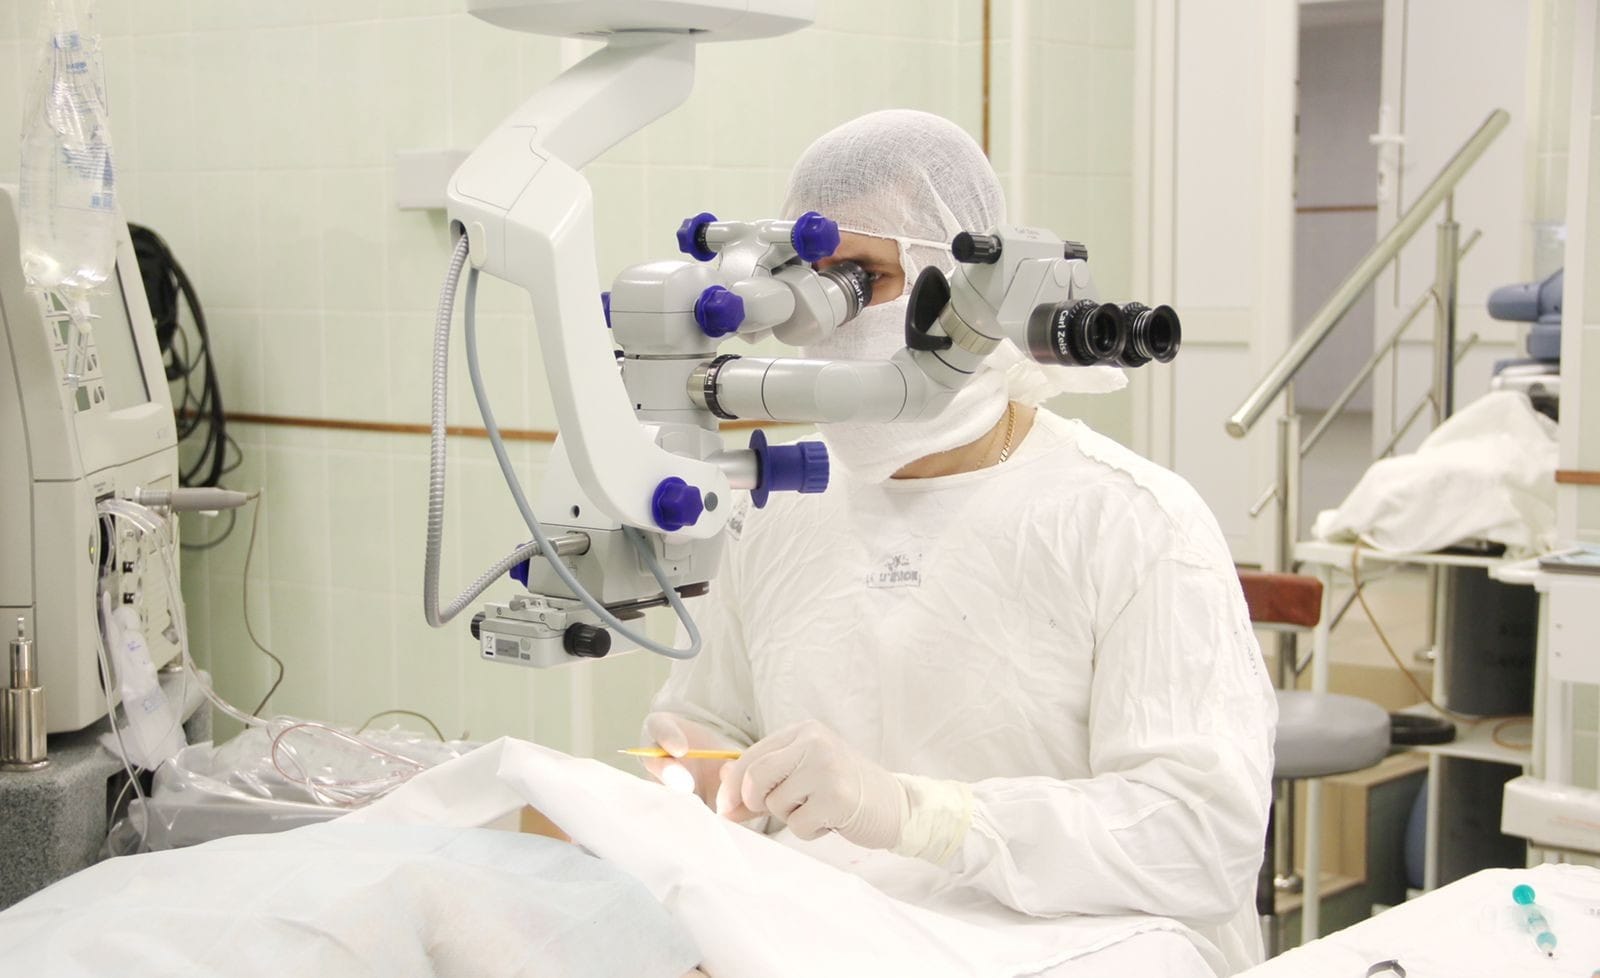 Здравоохранение в Томске и области, Томские новости, травма пострадали происшествия операция на глаза разрыв лечение В Томске хирурги вернули зрение пациенту с разрывом сетчатки